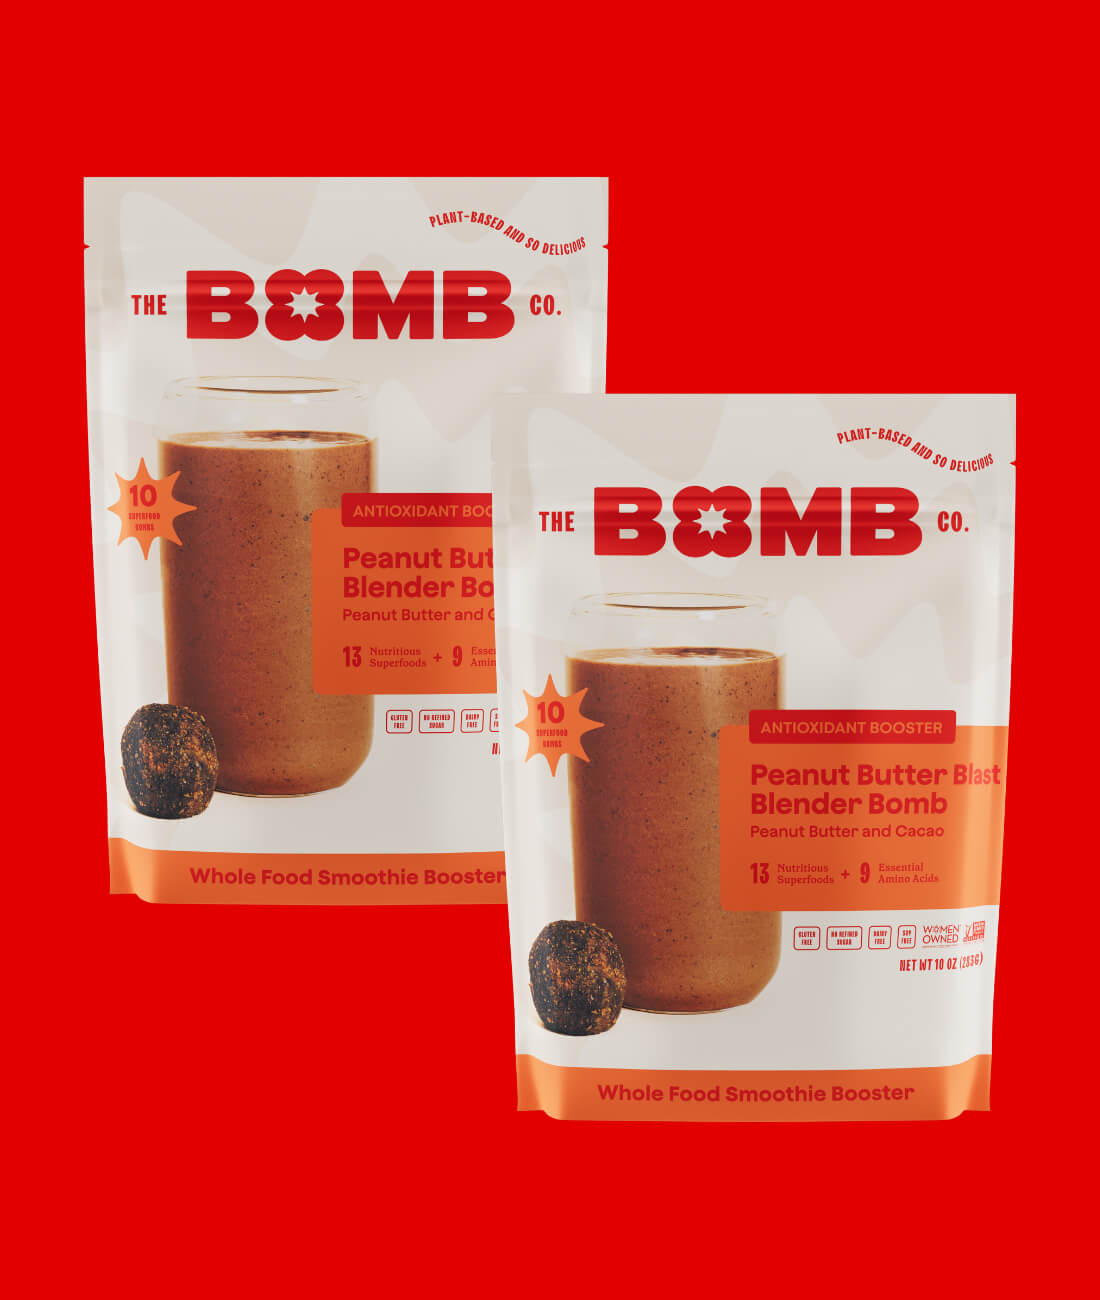 http://thebombco.com/cdn/shop/files/peanut-butter-blast-blender-bomb-2.jpg?v=1699977676